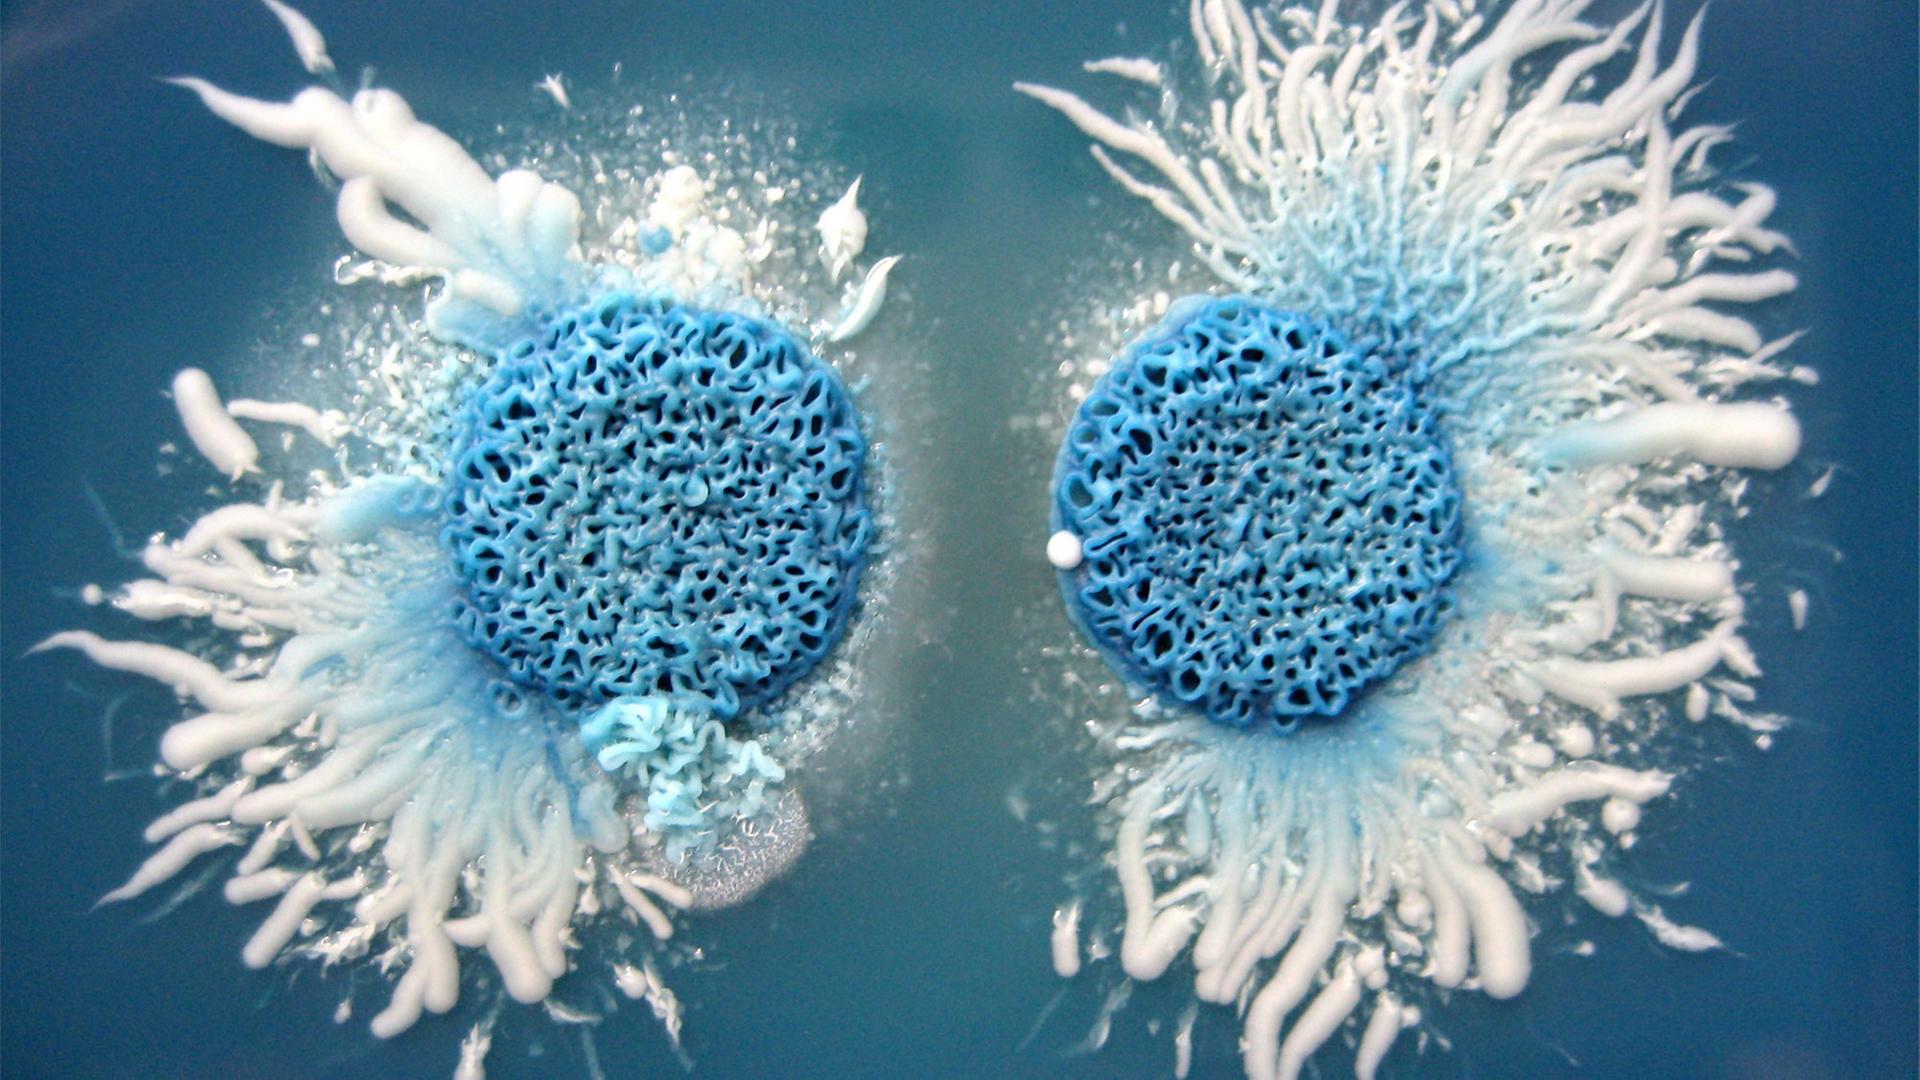 Zwei Kolonien des Hefepilzes Candida albicans auf GM-Bromocresol-Agar, einem Spezialnährboden, der zu einer typischen Färbung der Zellen führt   